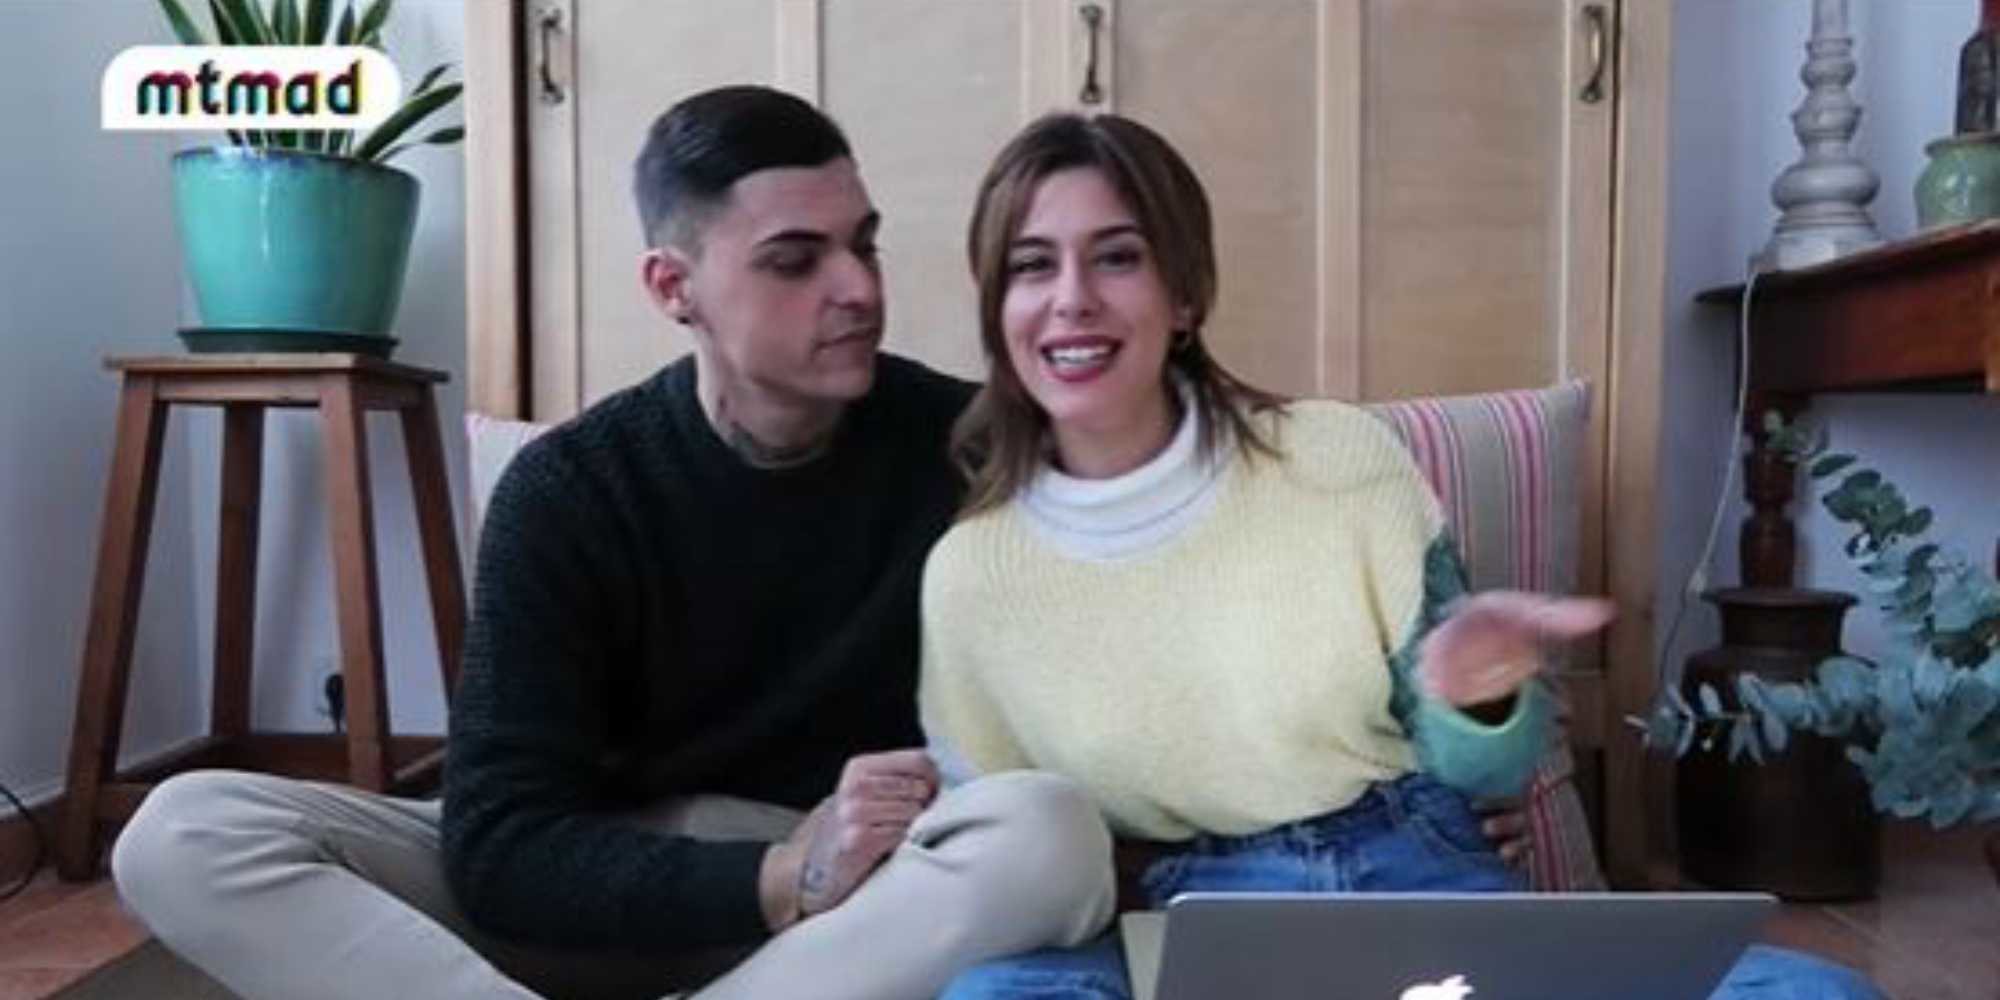 Adrián, el nuevo novio de Bea Retamal ('GH 17') le da una sorpresa en directo en Mtmad